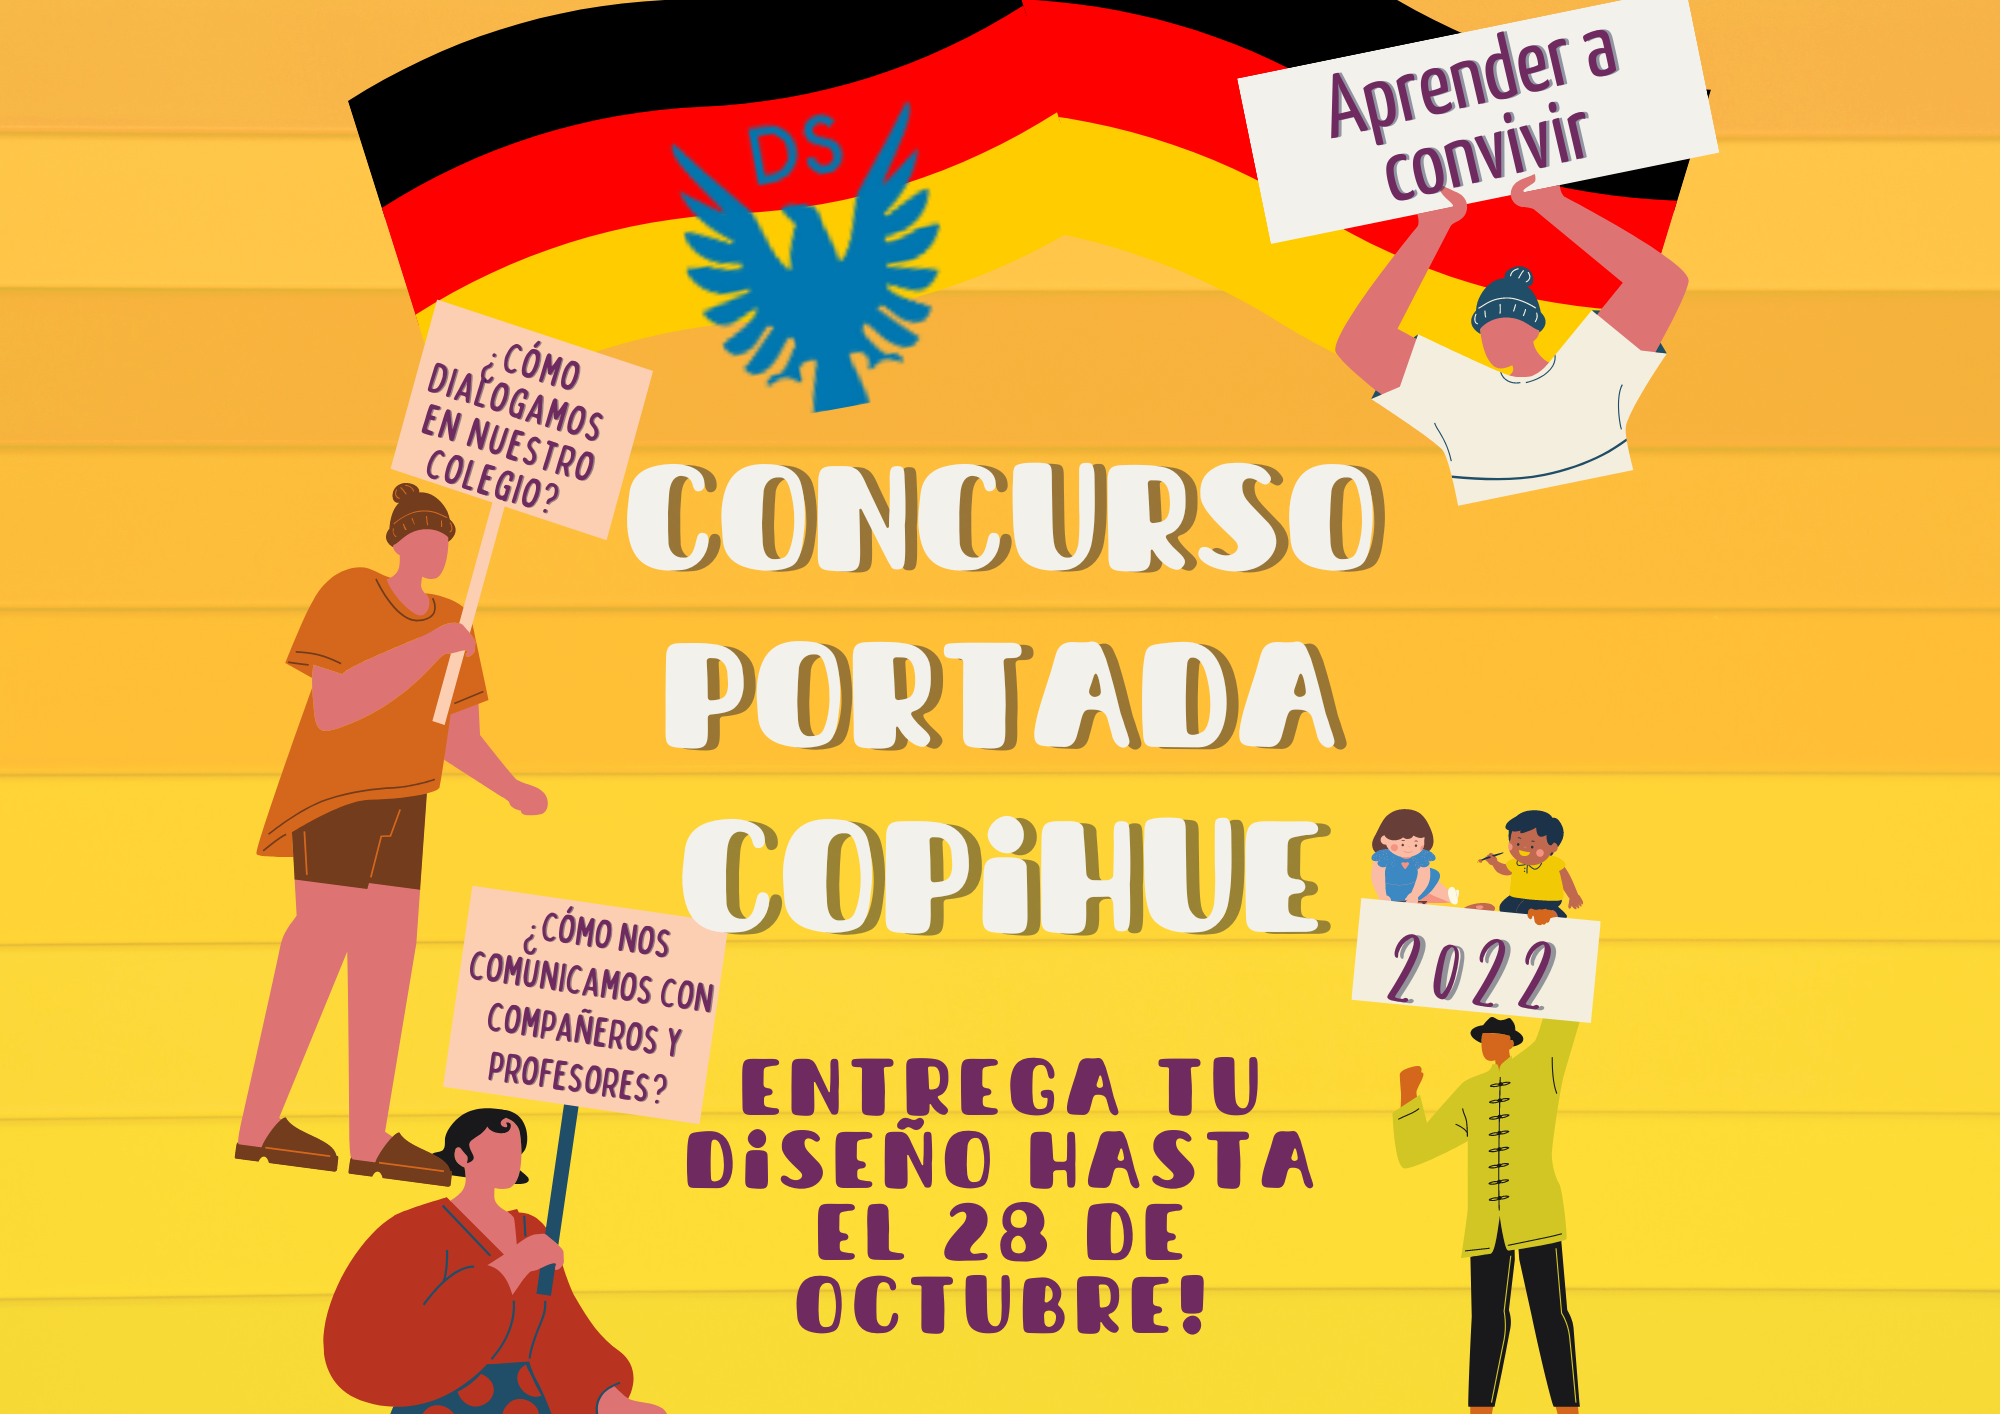 CONCURSO DE PORTADA COPIHUE 2022